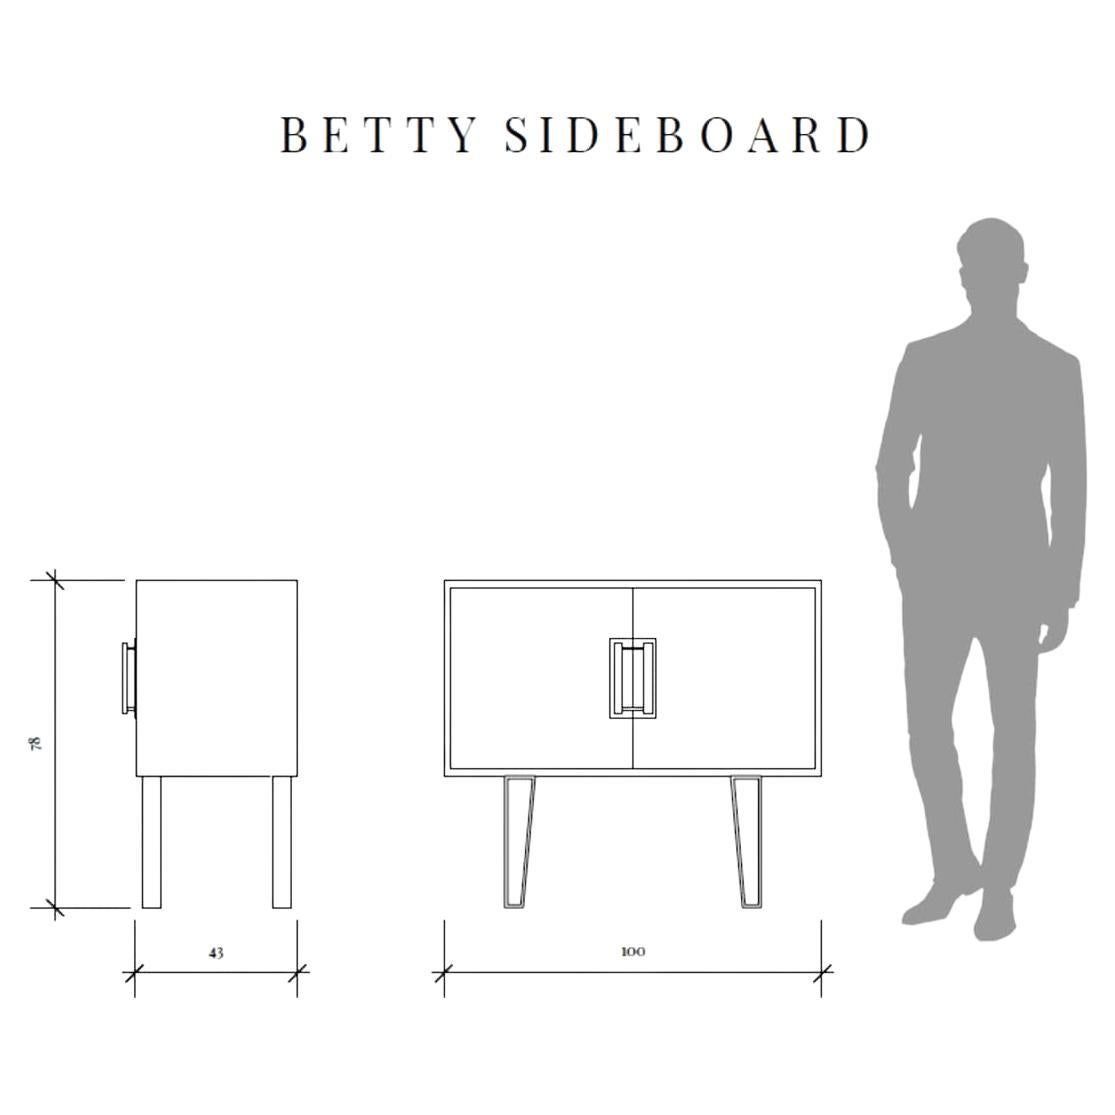 BETTY FLORAL IKAT
Entworfen von Roome LONDON und Geraldine Larkin.
Durch die gemeinsame Überzeugung, altehrwürdige Techniken im zeitgenössischen Design zu verwenden, entsteht in der Collaboration mit dem Möbelhersteller Roome LONDON die Moderne des